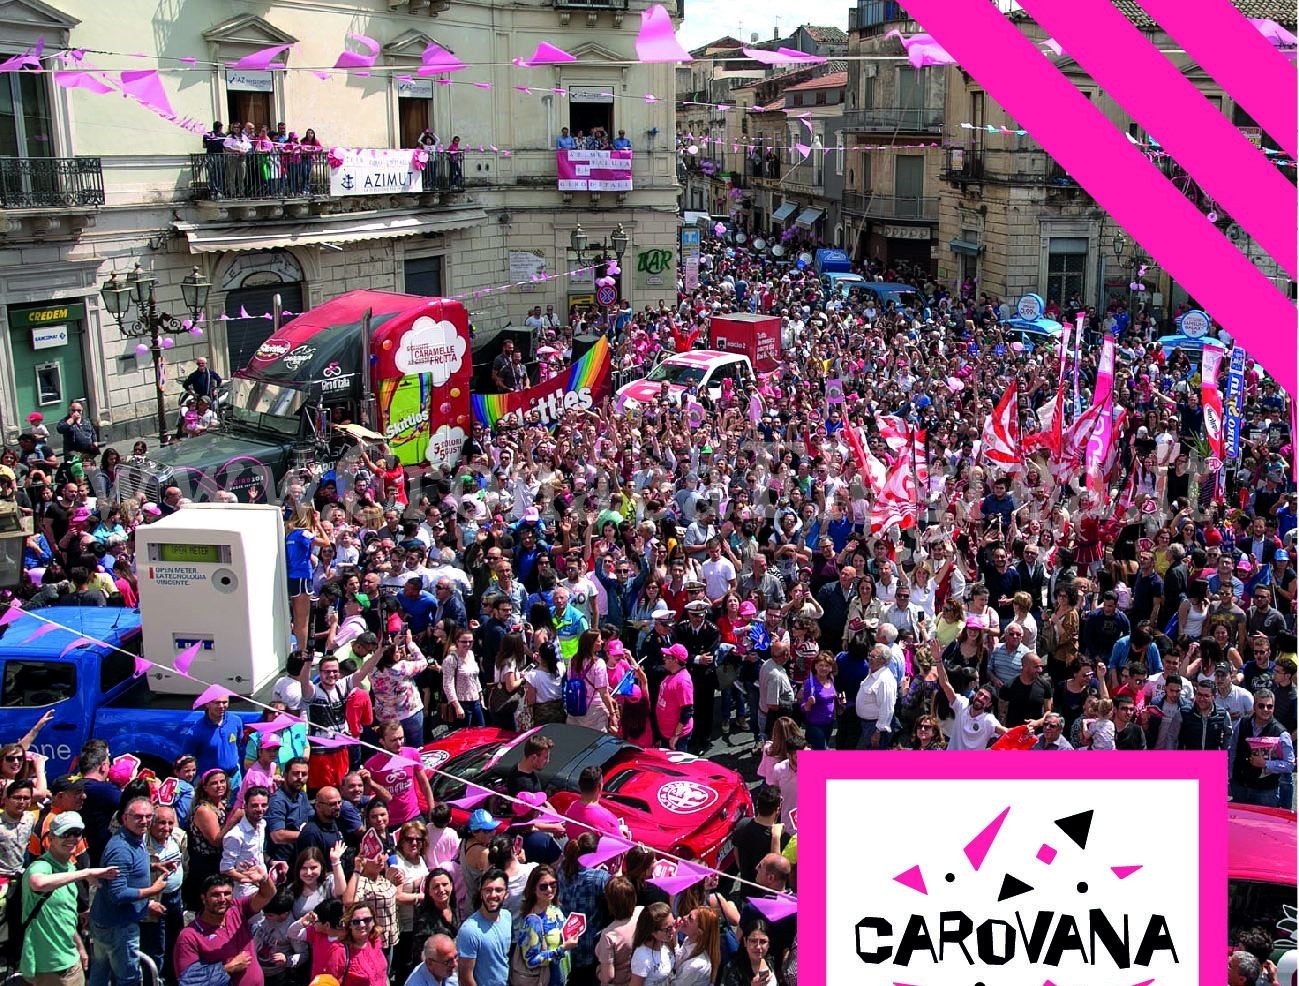 La Carovana del Giro d’Italia fa tappa a Pozzuoli: gadget e animazione a ritmo di musica